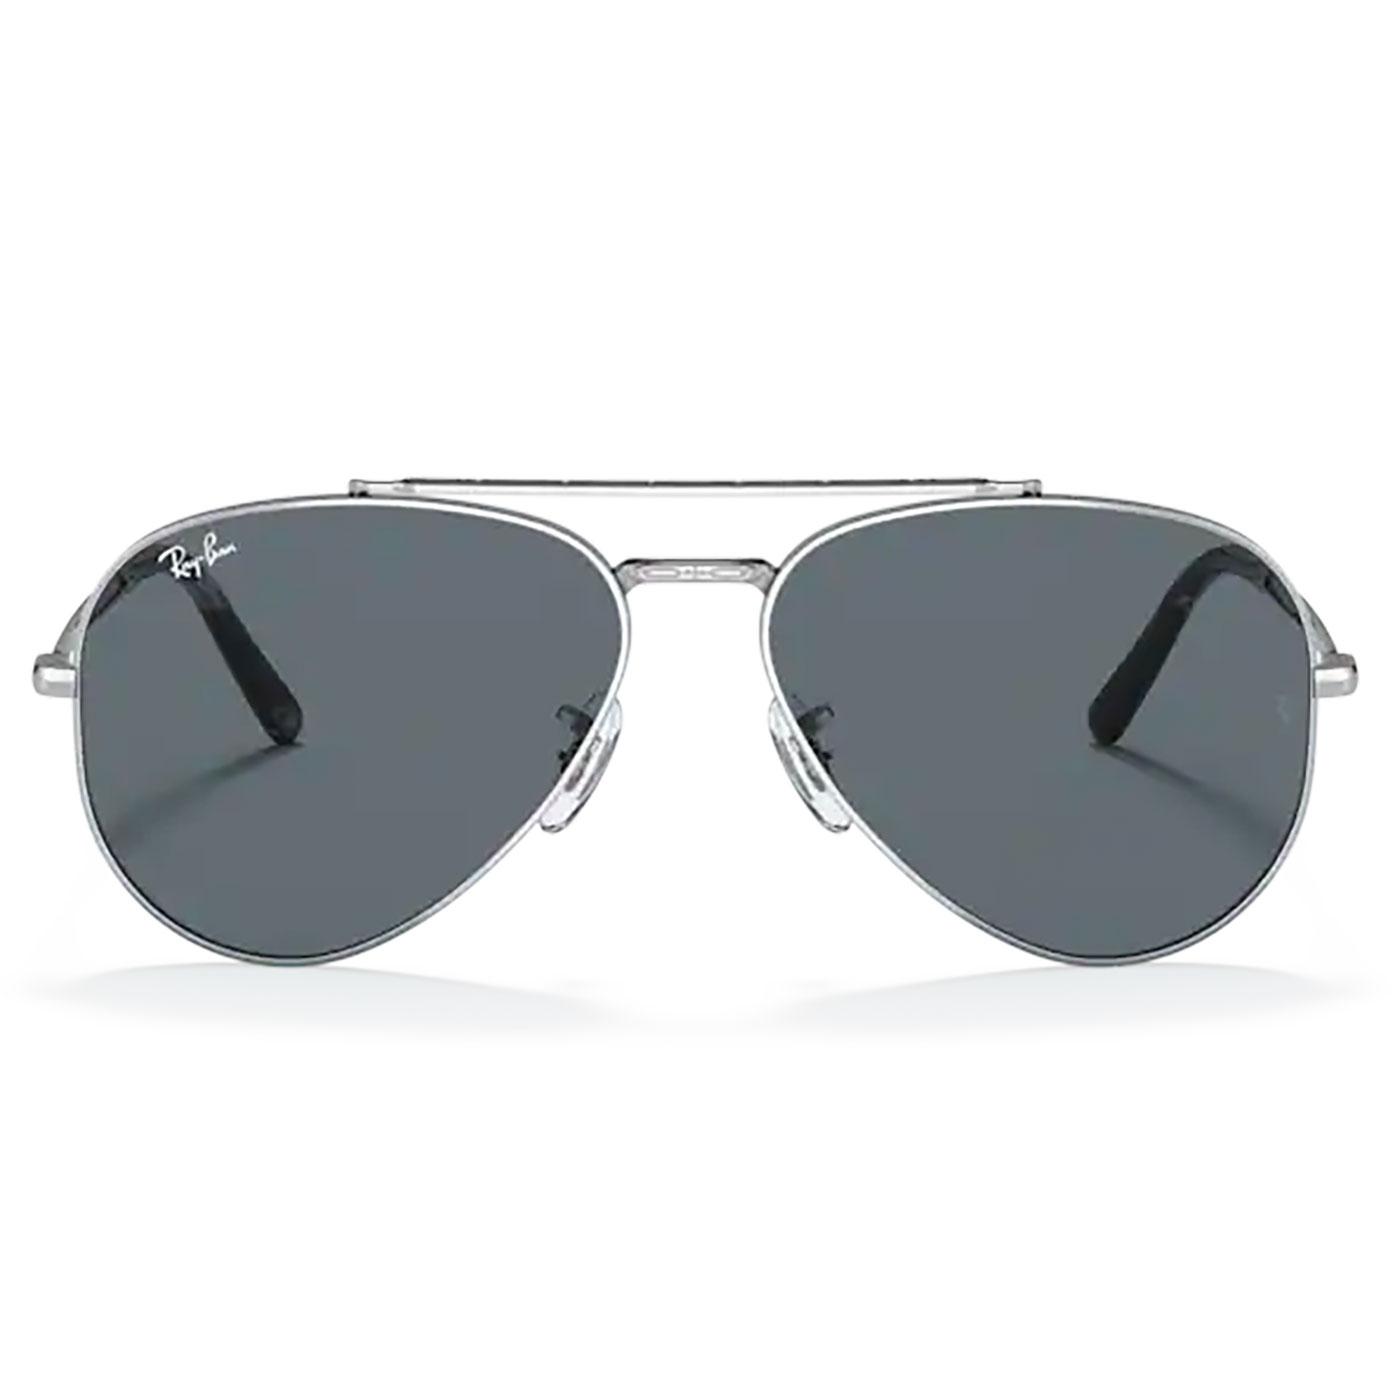 RAY-BAN New Aviator Retro Sunglasses in Silver